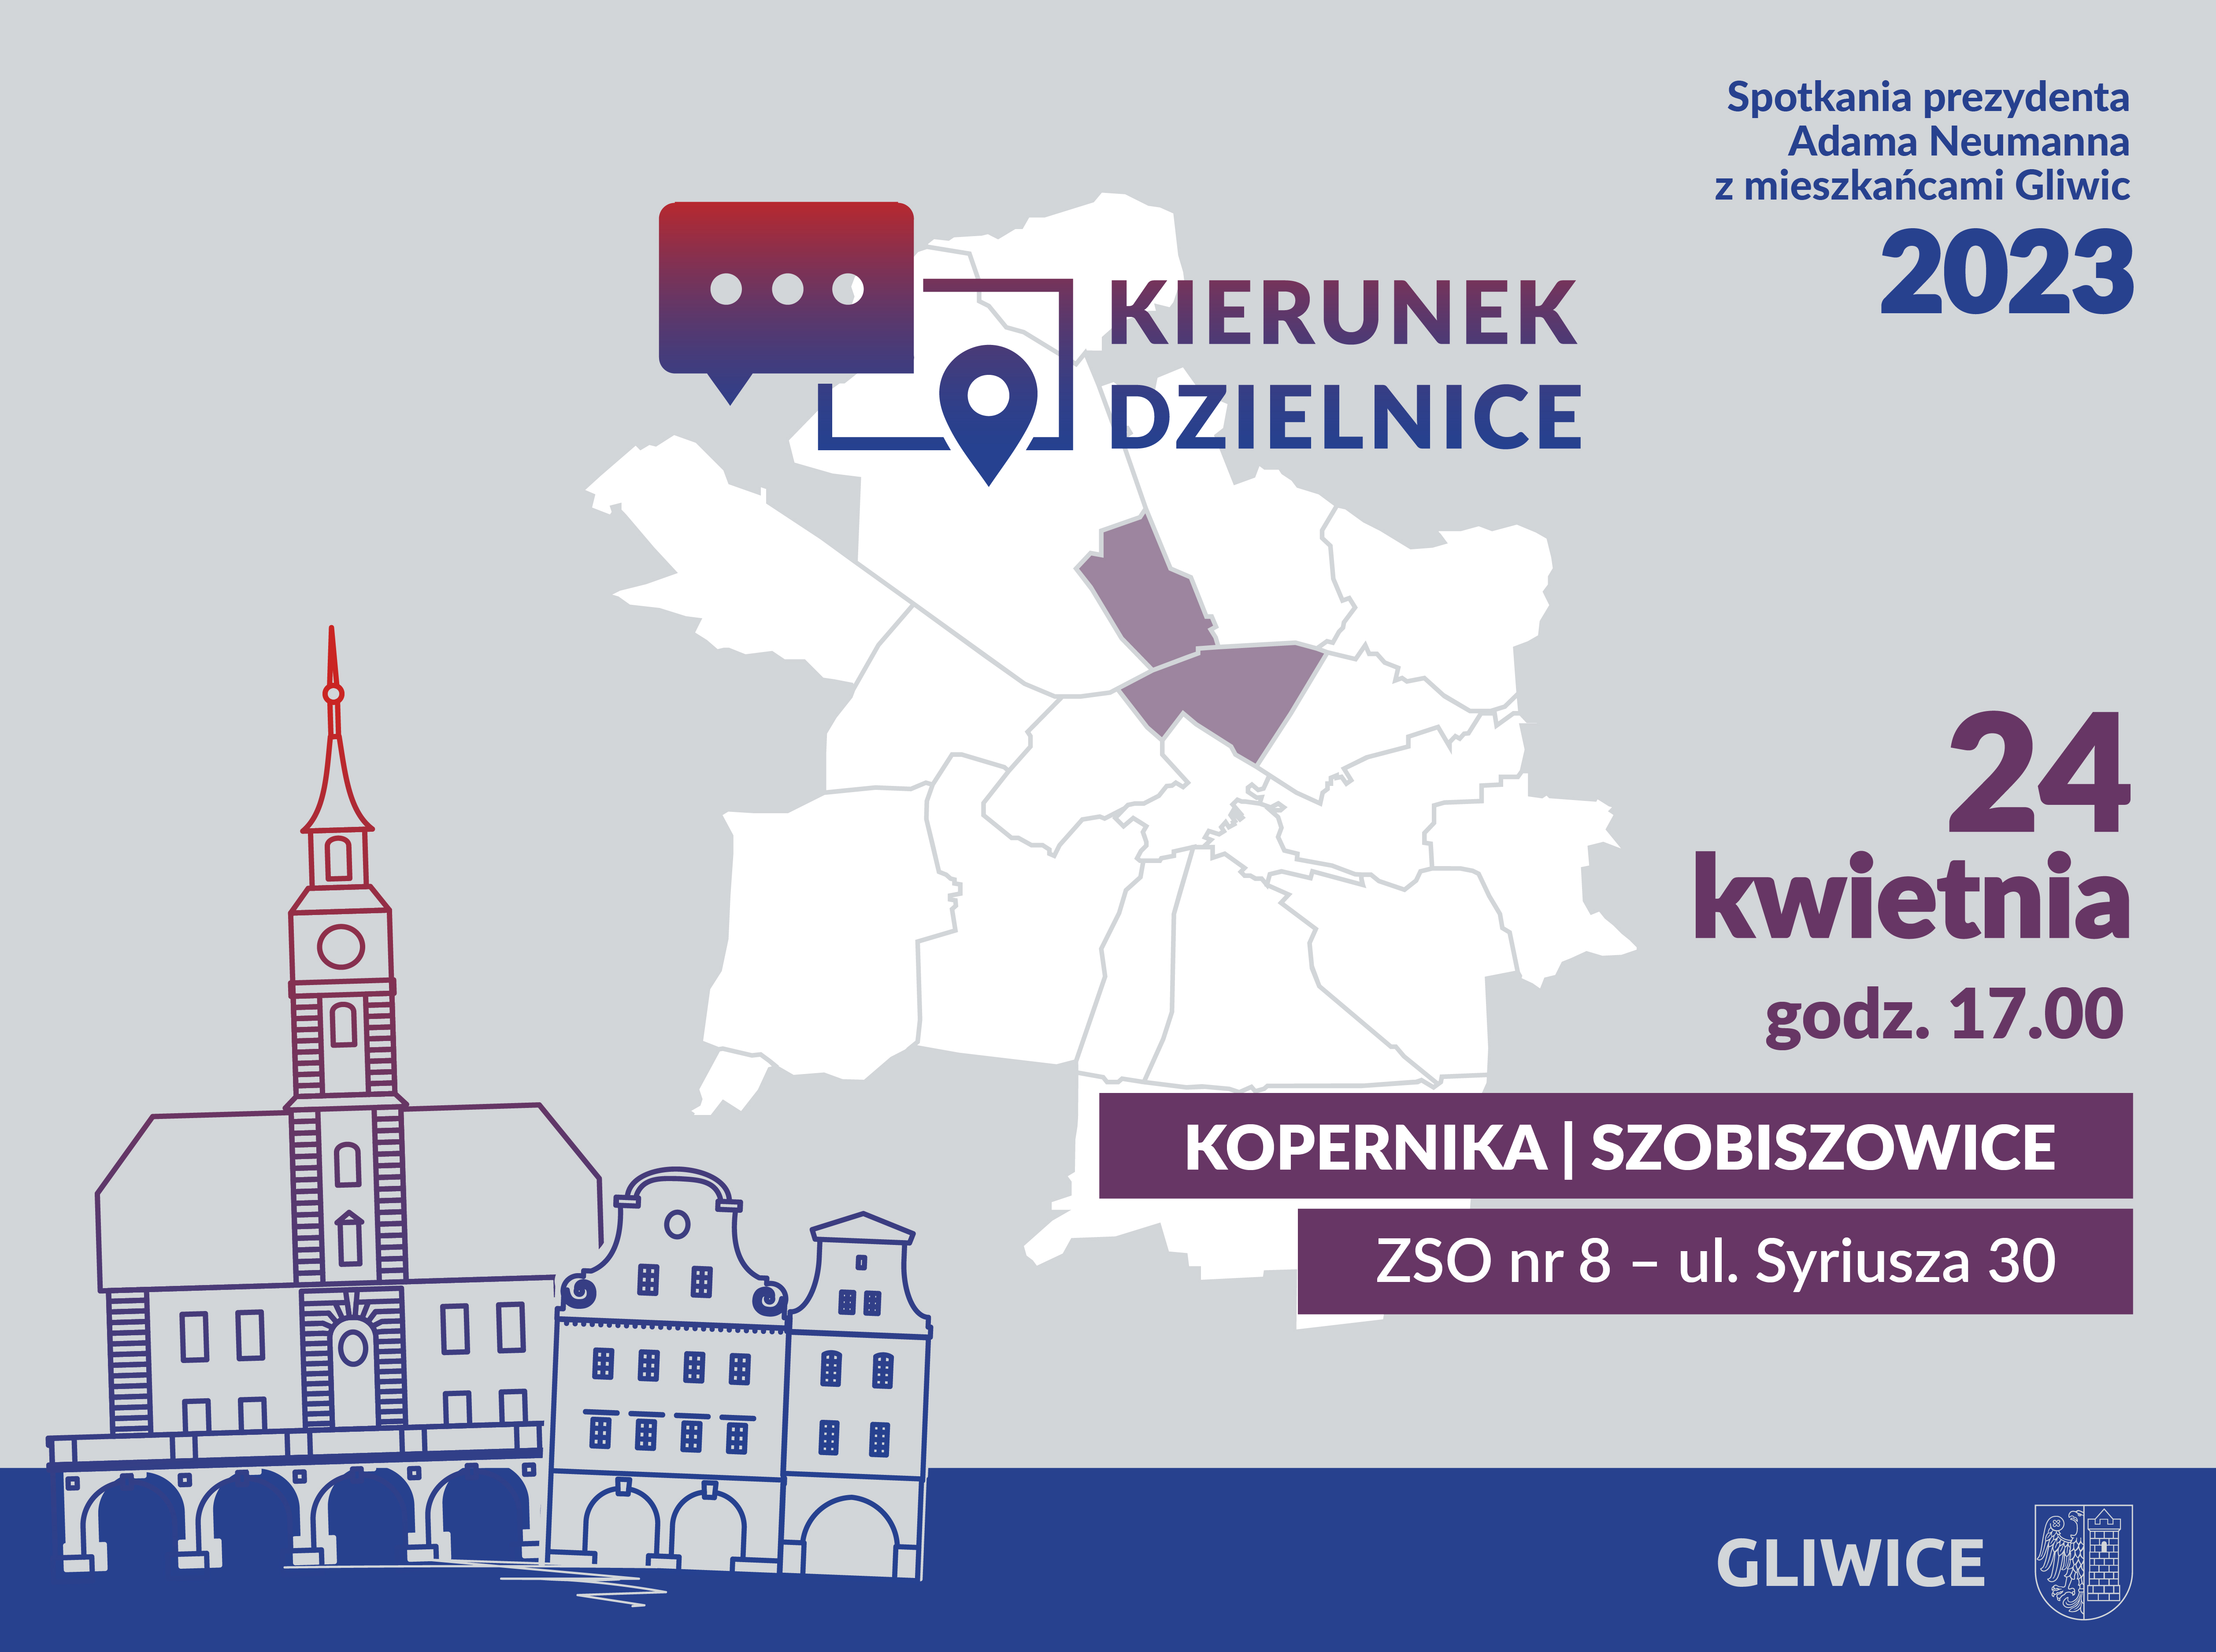 Spotkanie prezydenta z mieszkańcami: Kopernika, Szobiszowice